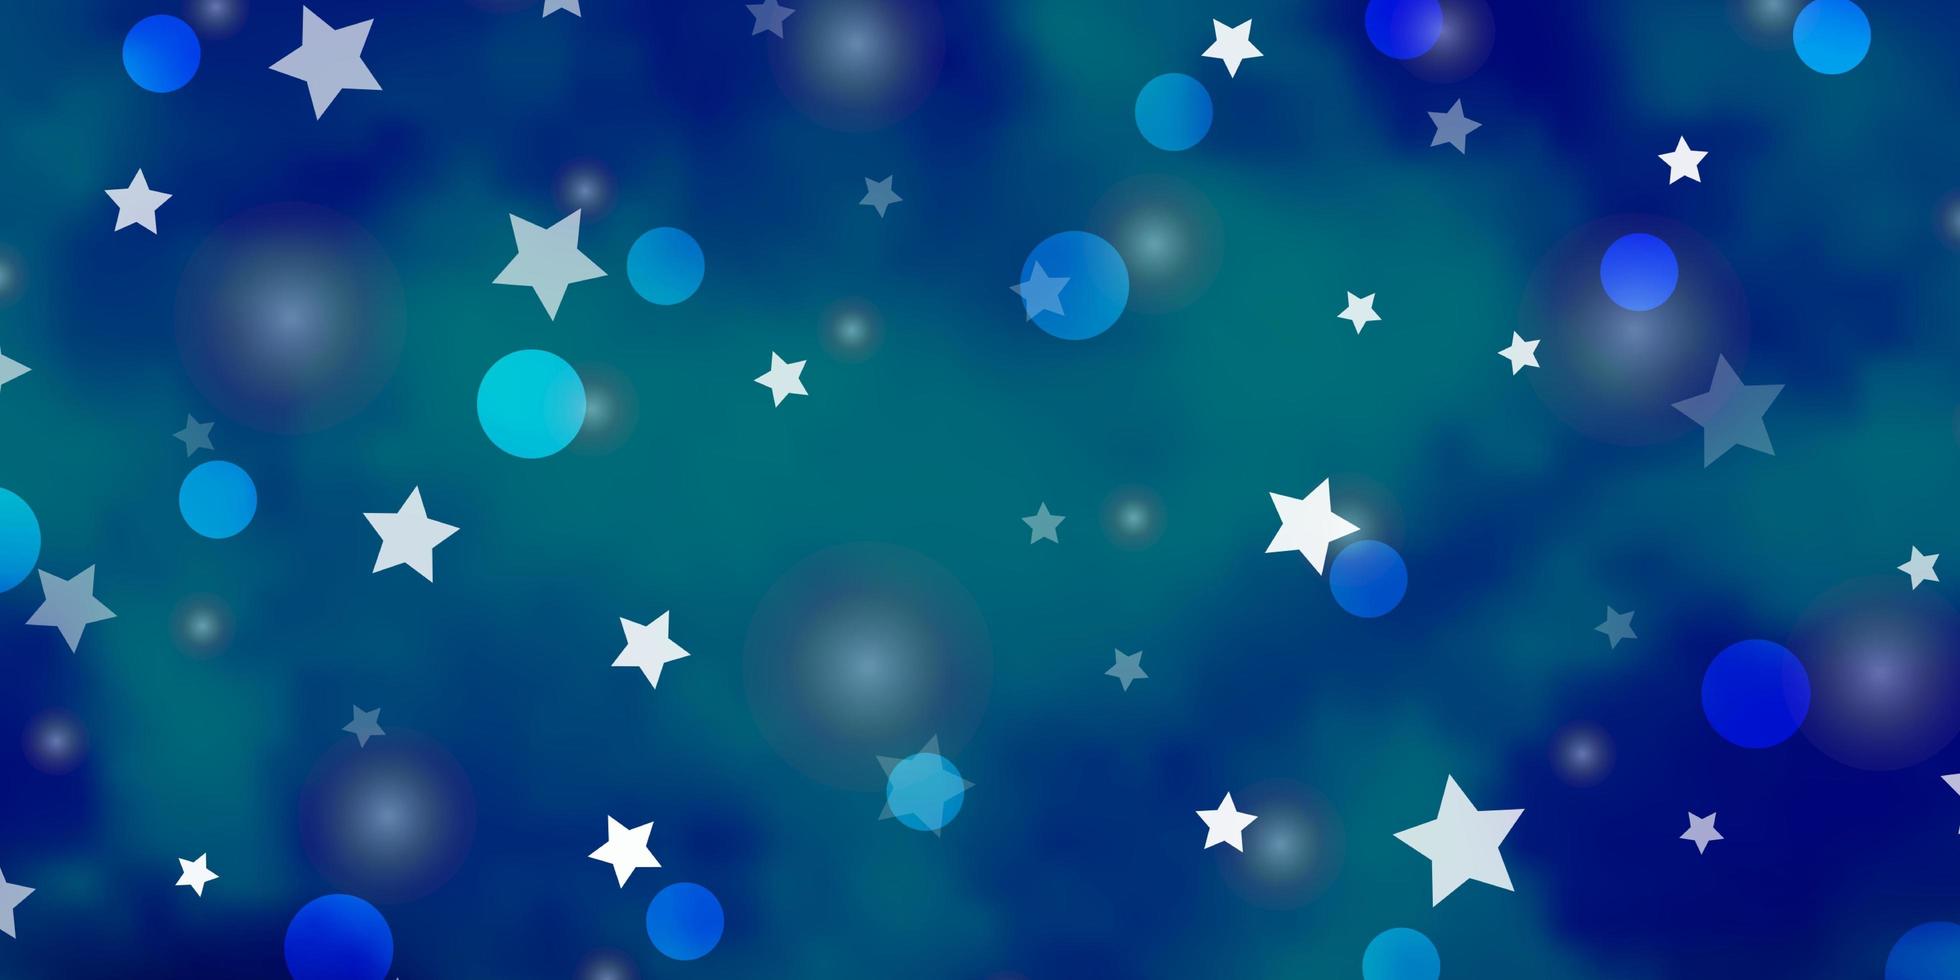 disposition de vecteur bleu clair avec des cercles, des étoiles. illustration abstraite avec des formes colorées de cercles, d'étoiles. conception pour textile, tissu, papiers peints.